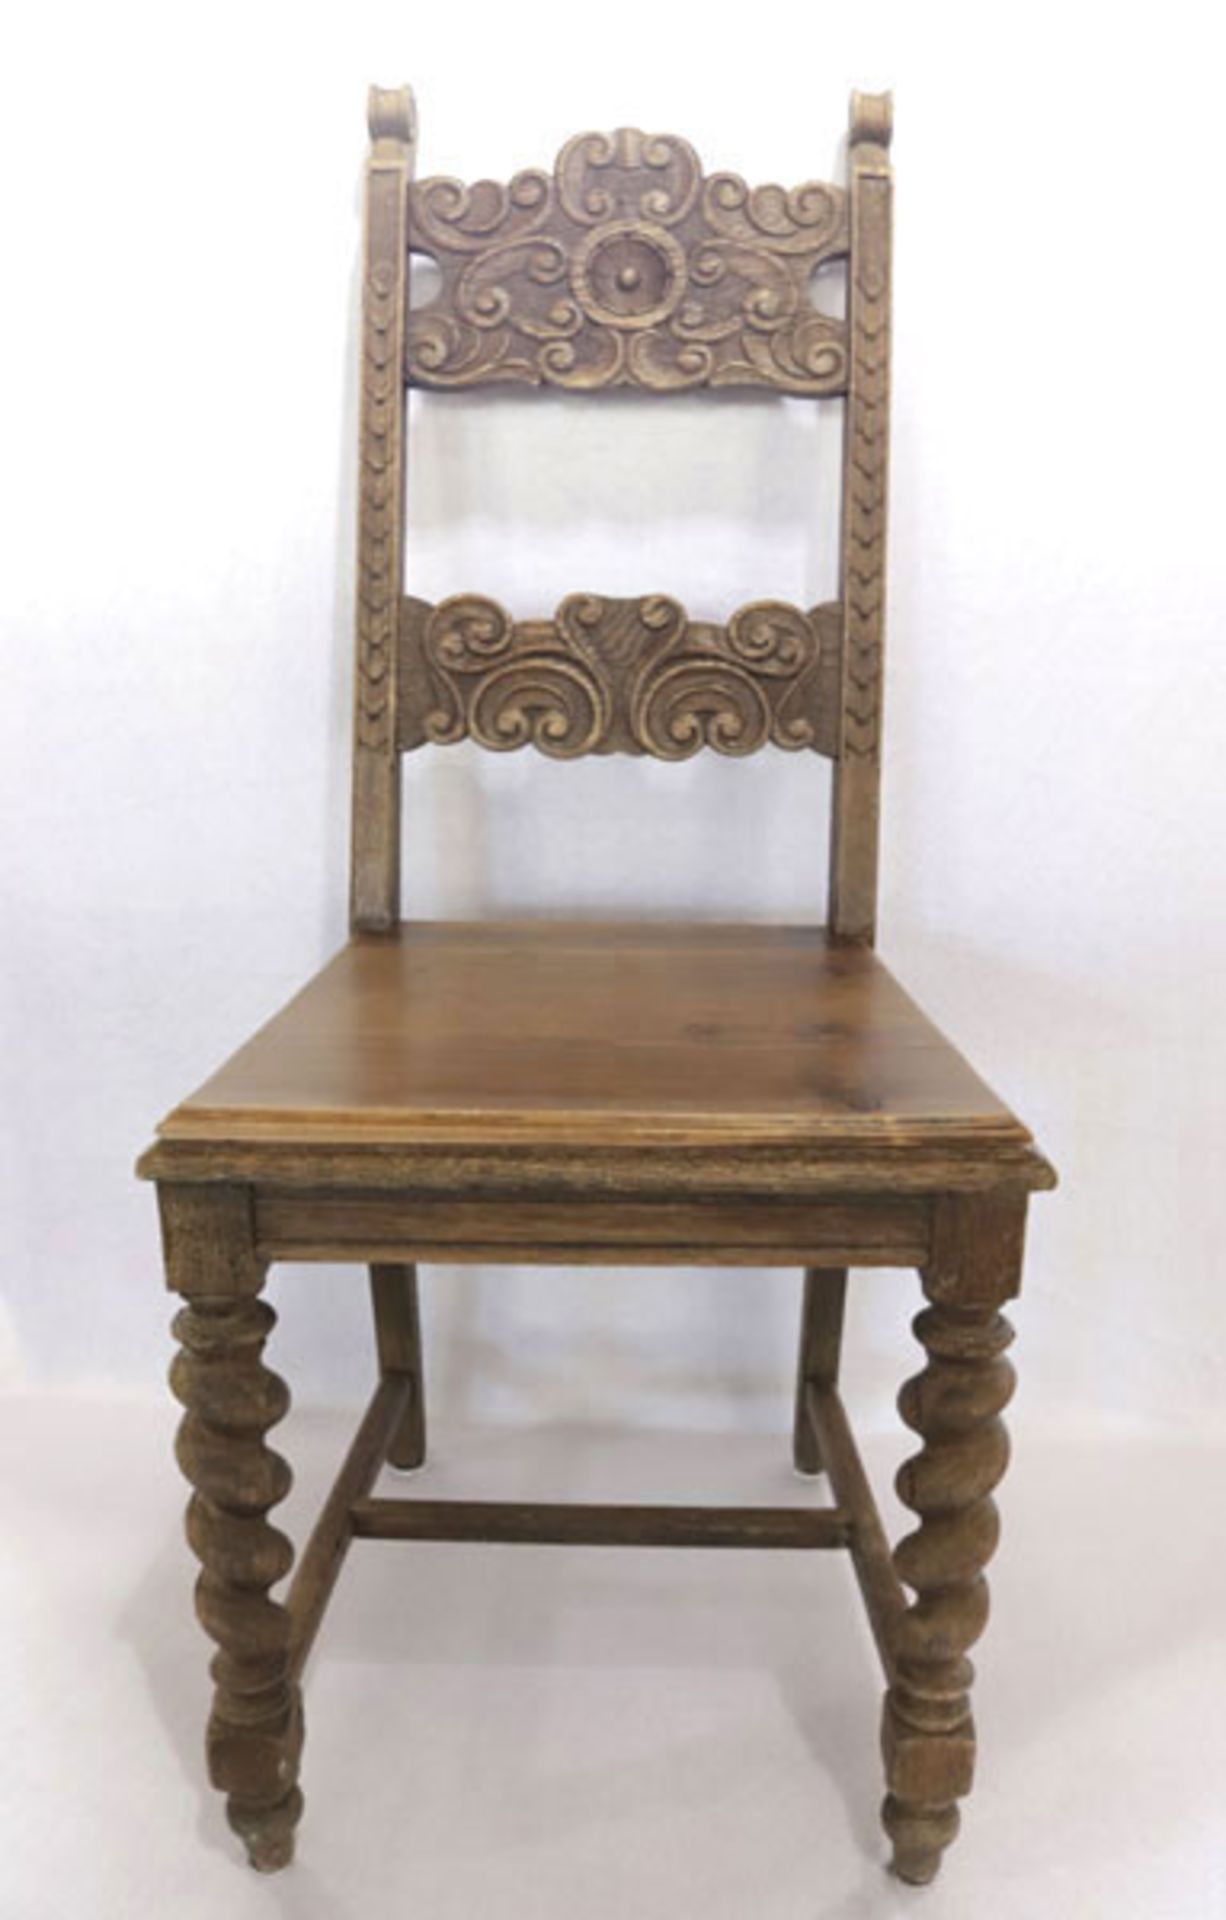 Satz von 8 Holzstühlen, teils gedrechselt, Lehne mit Reliefschnitzerei, H 108 cm, B 43 cm, T 41 cm, 